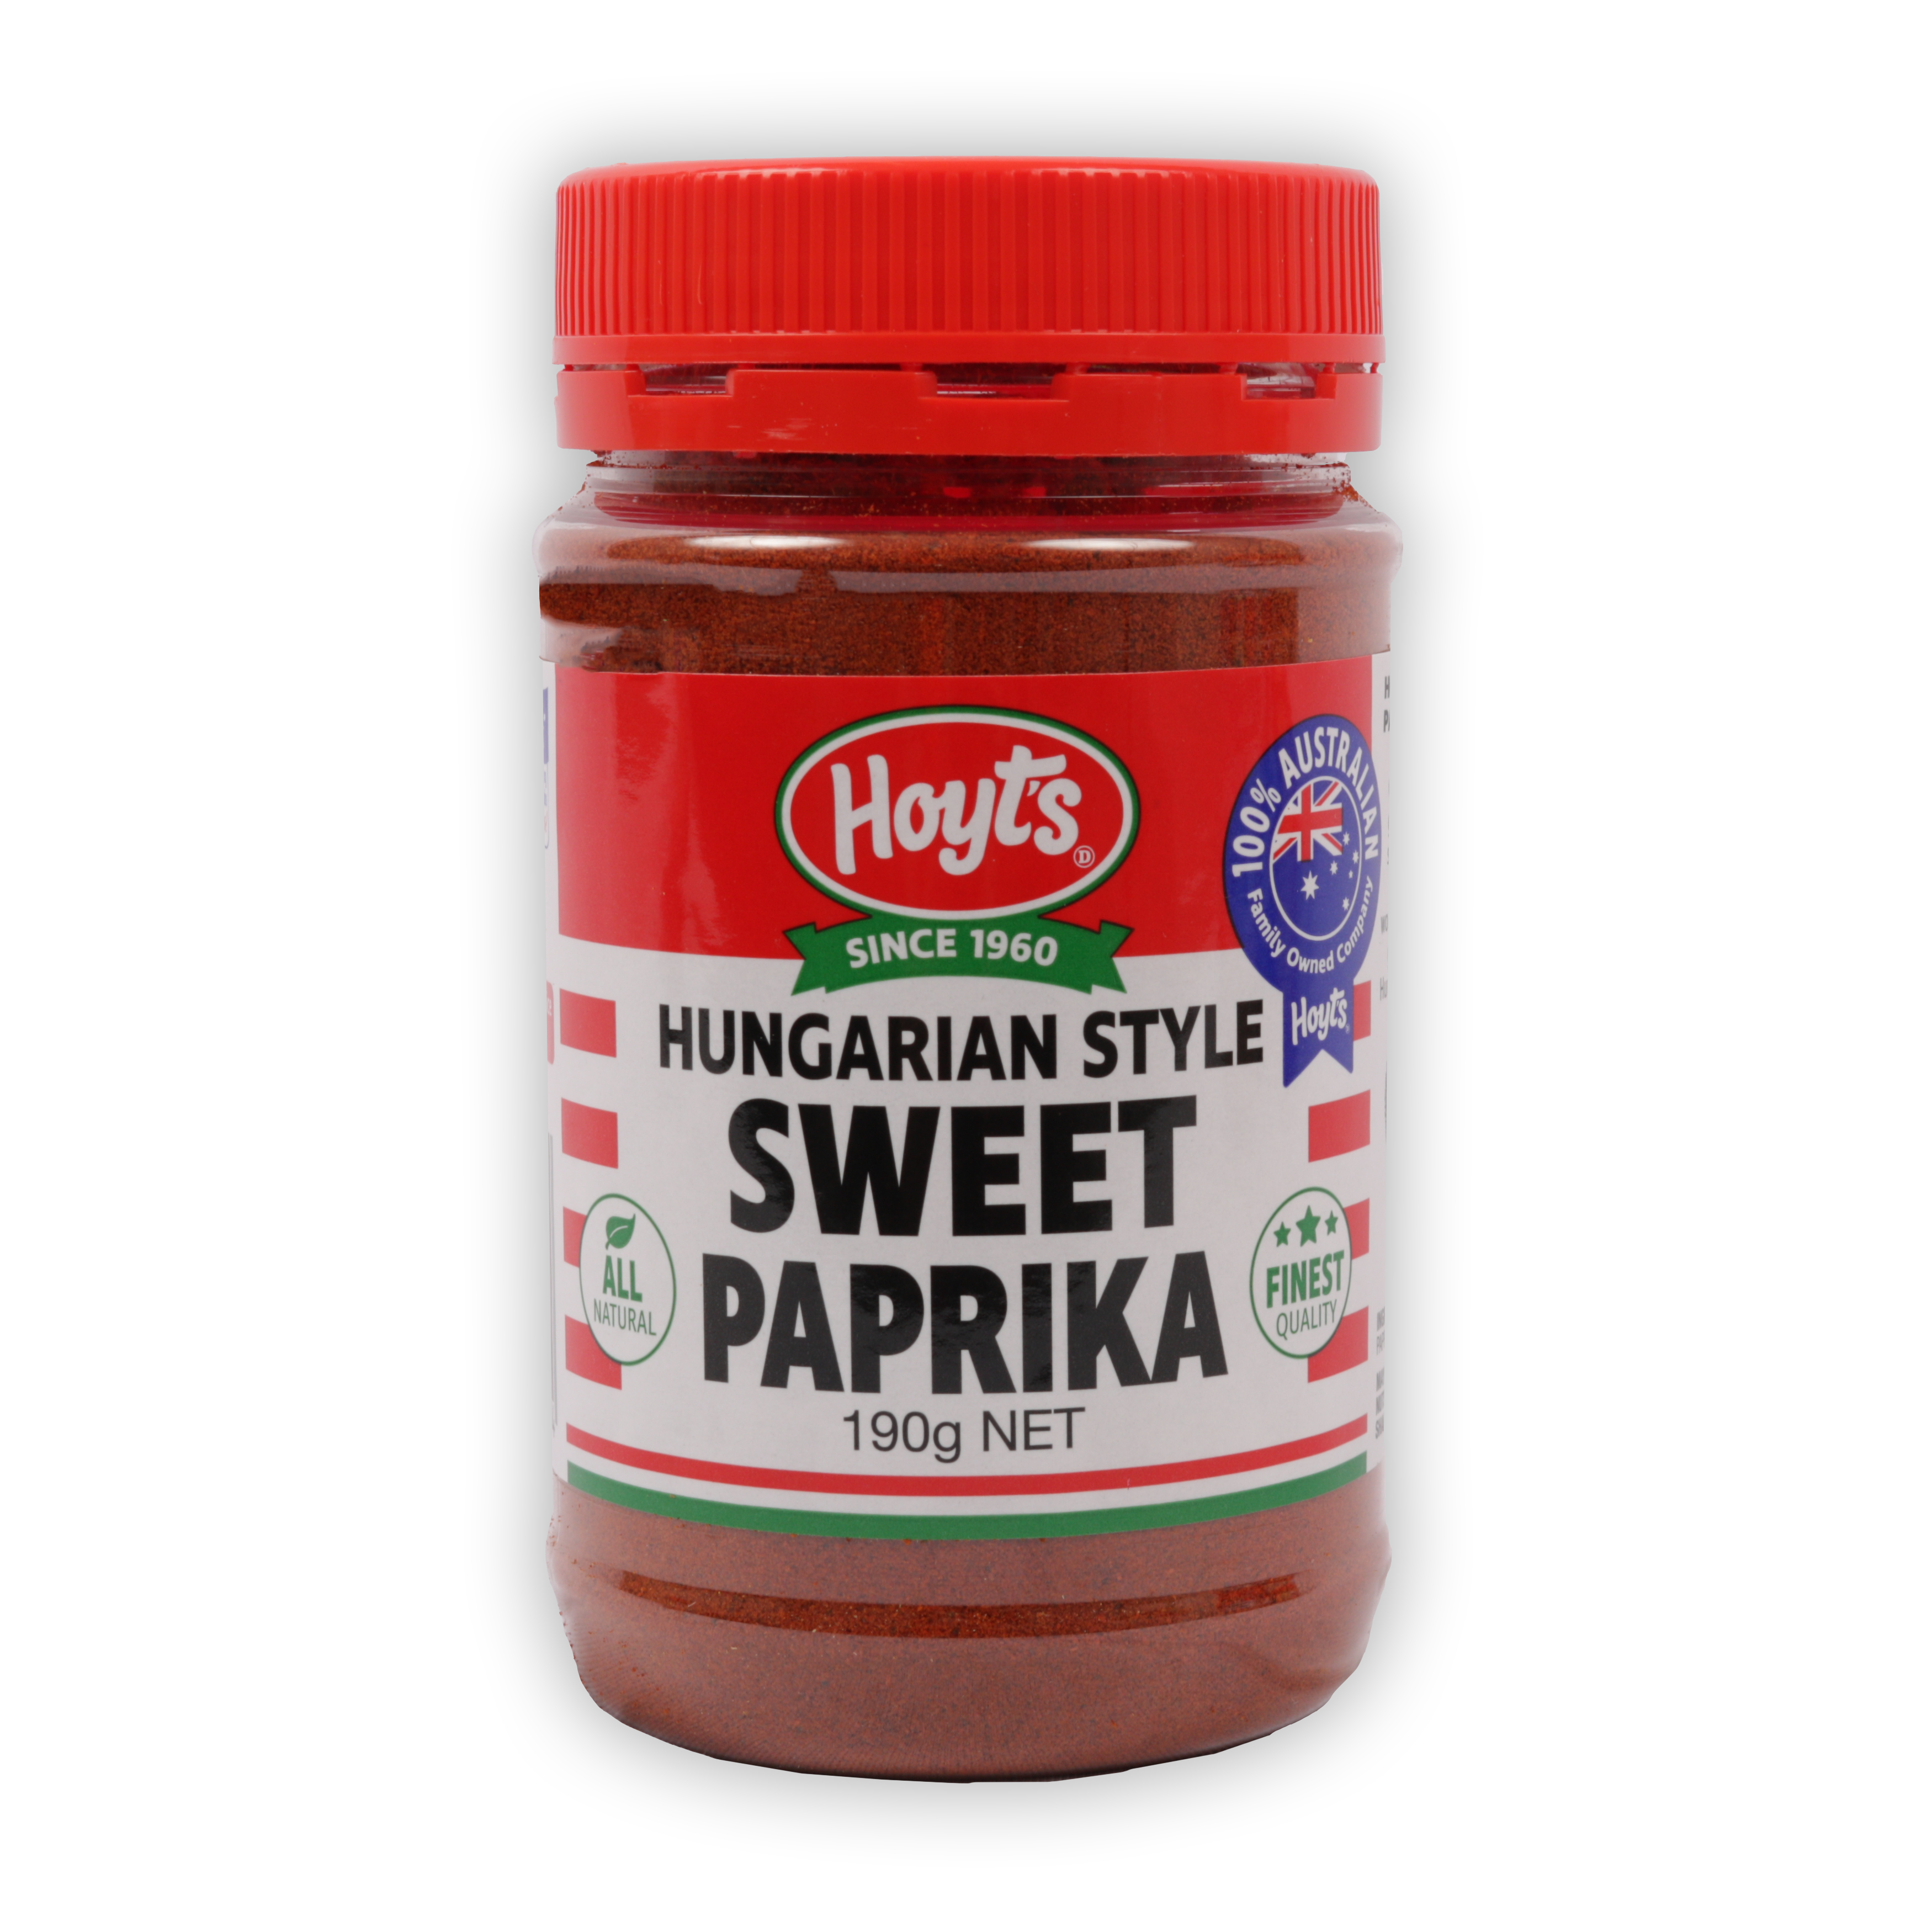 Hoyts Hungarian Style Sweet Paprika 190g